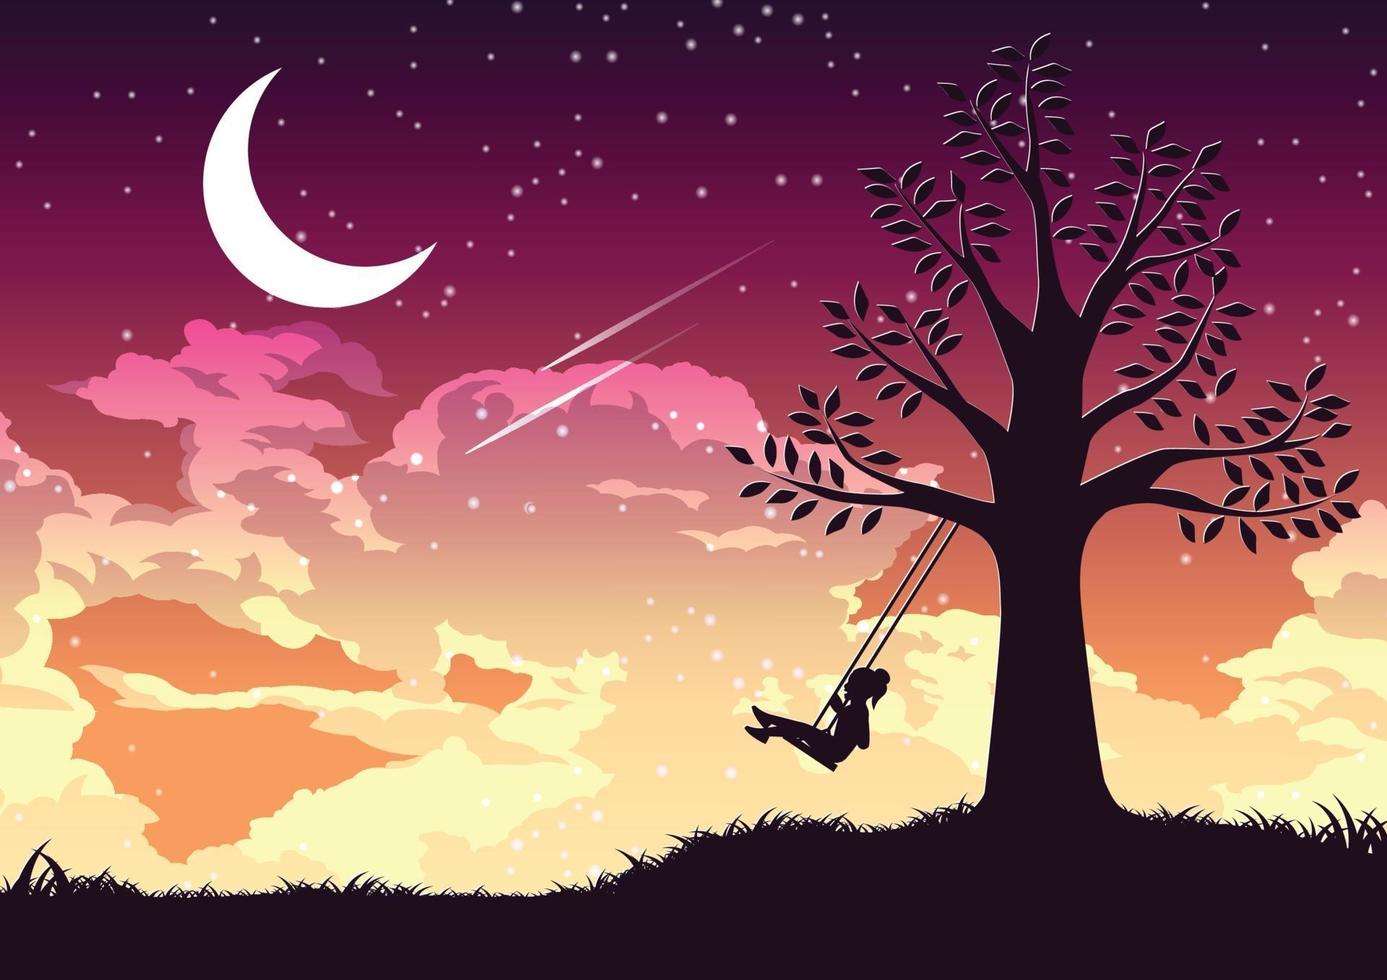 conception de silhouette d & # 39; une fille se balançant seule sous l & # 39; arbre vecteur